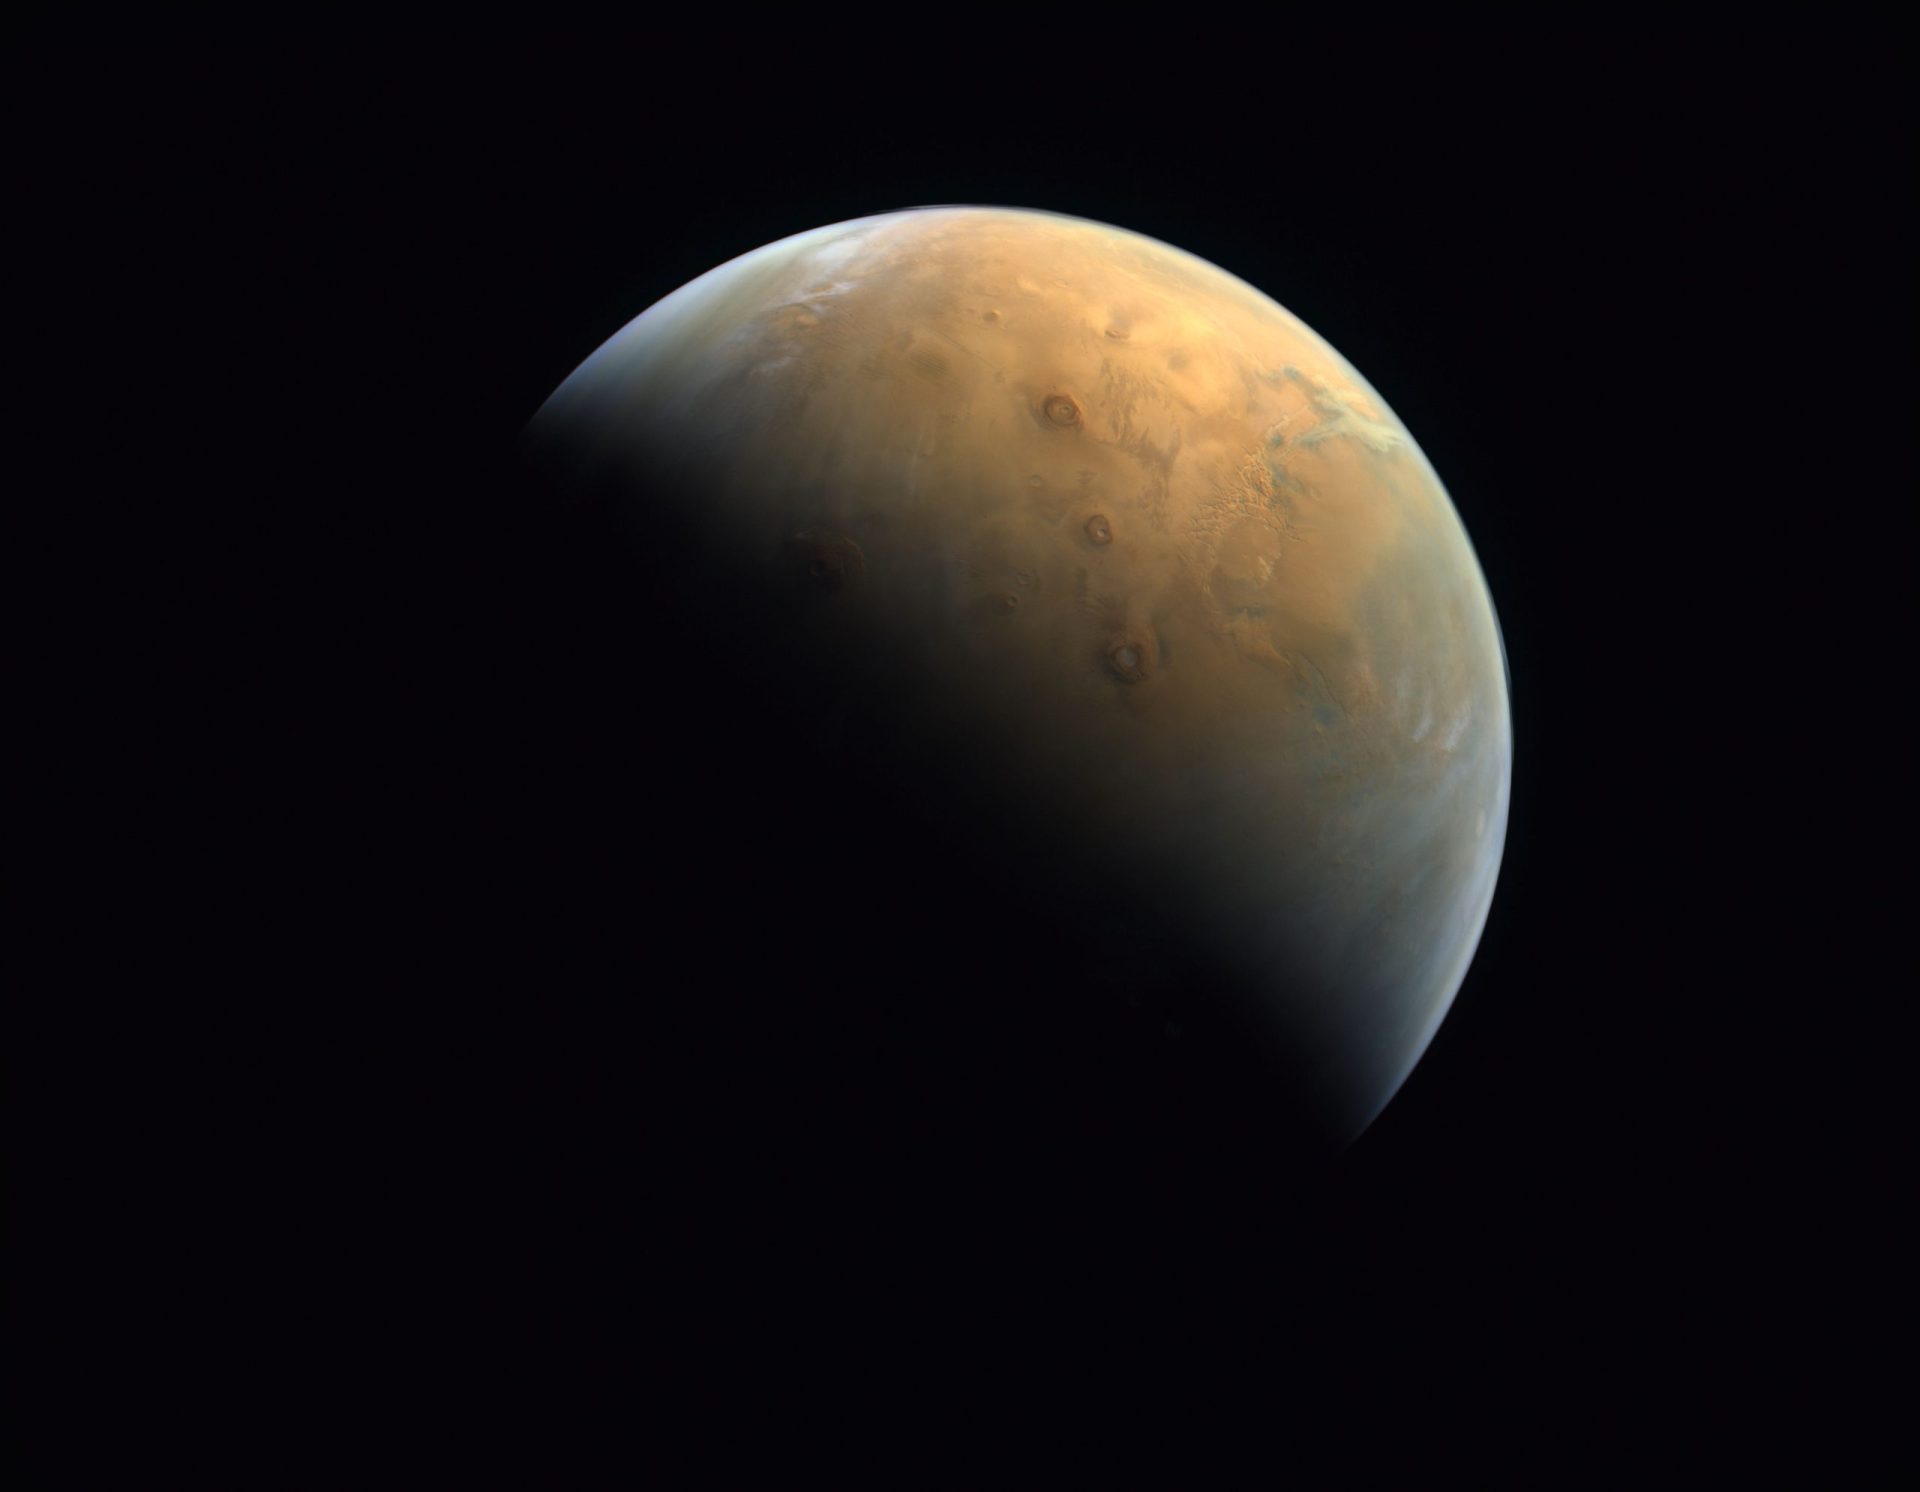 Sonda dos Emirados Árabes Unidos envia primeira imagem de Marte